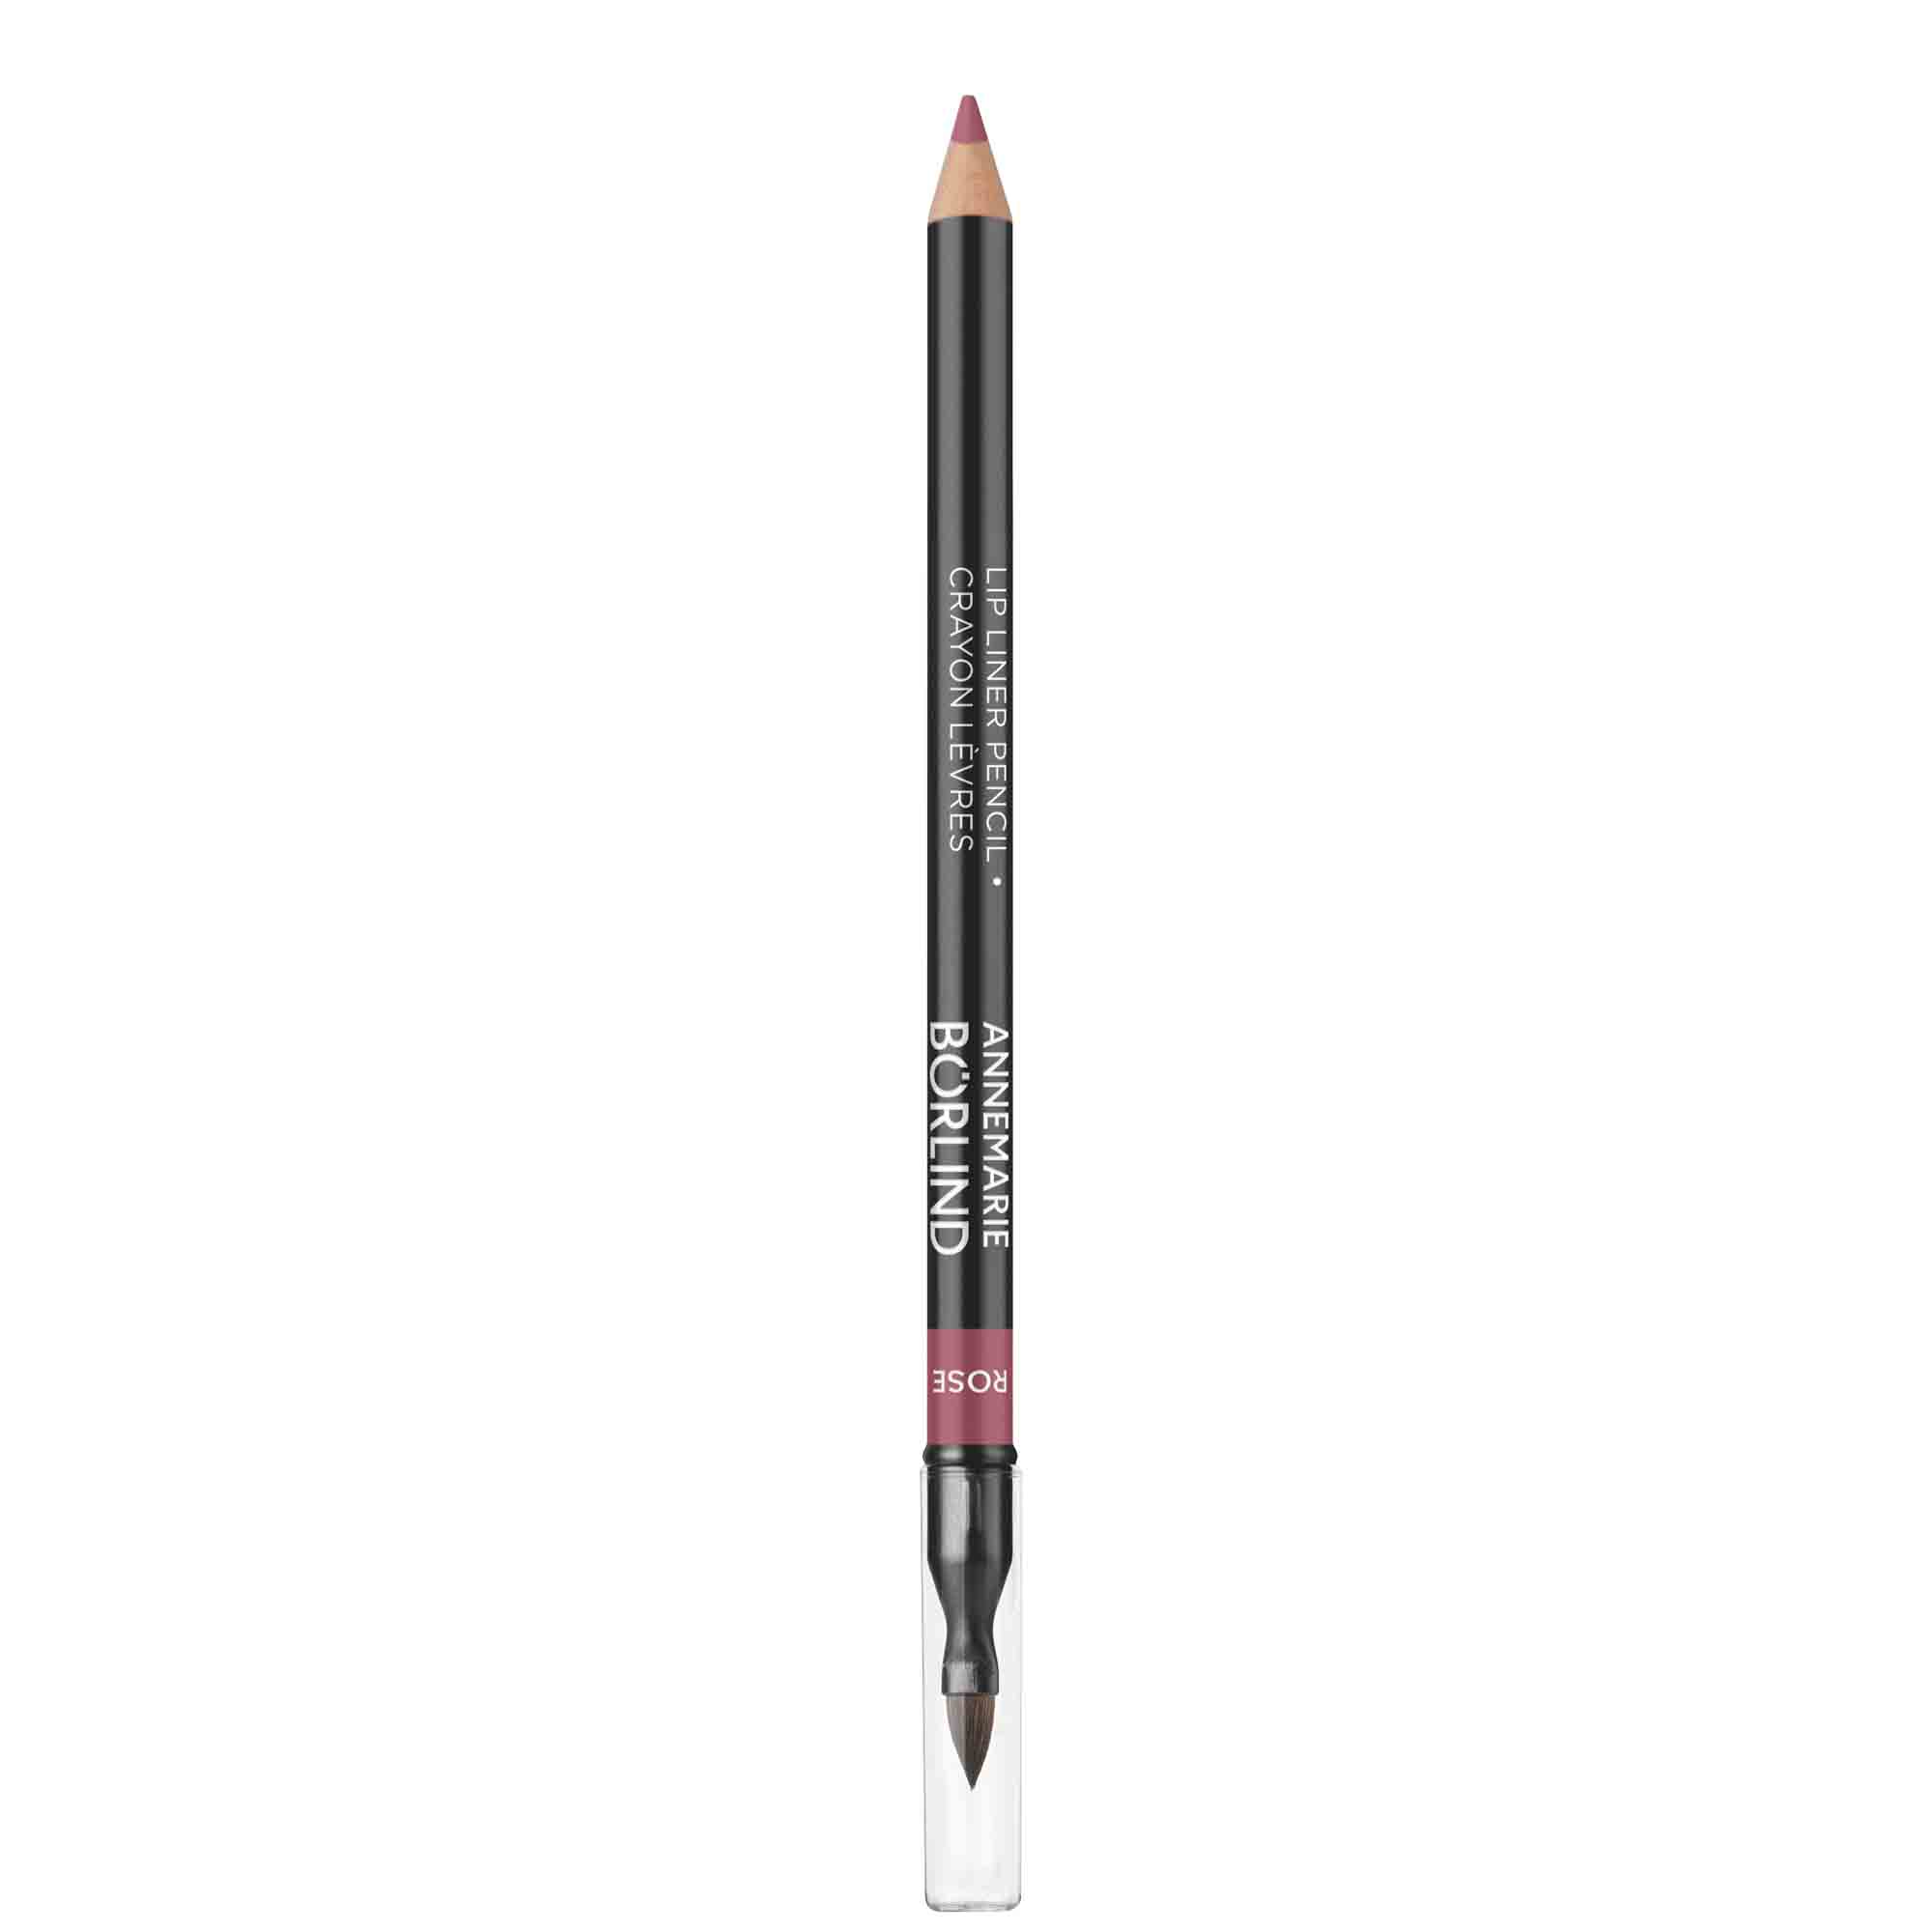 Карандаш для губ ANNEMARIE BORLIND Lip Liner Pencil контурный, с кисточкой, розовый, 1 г карандаш для губ annemarie borlind розовый 1 г